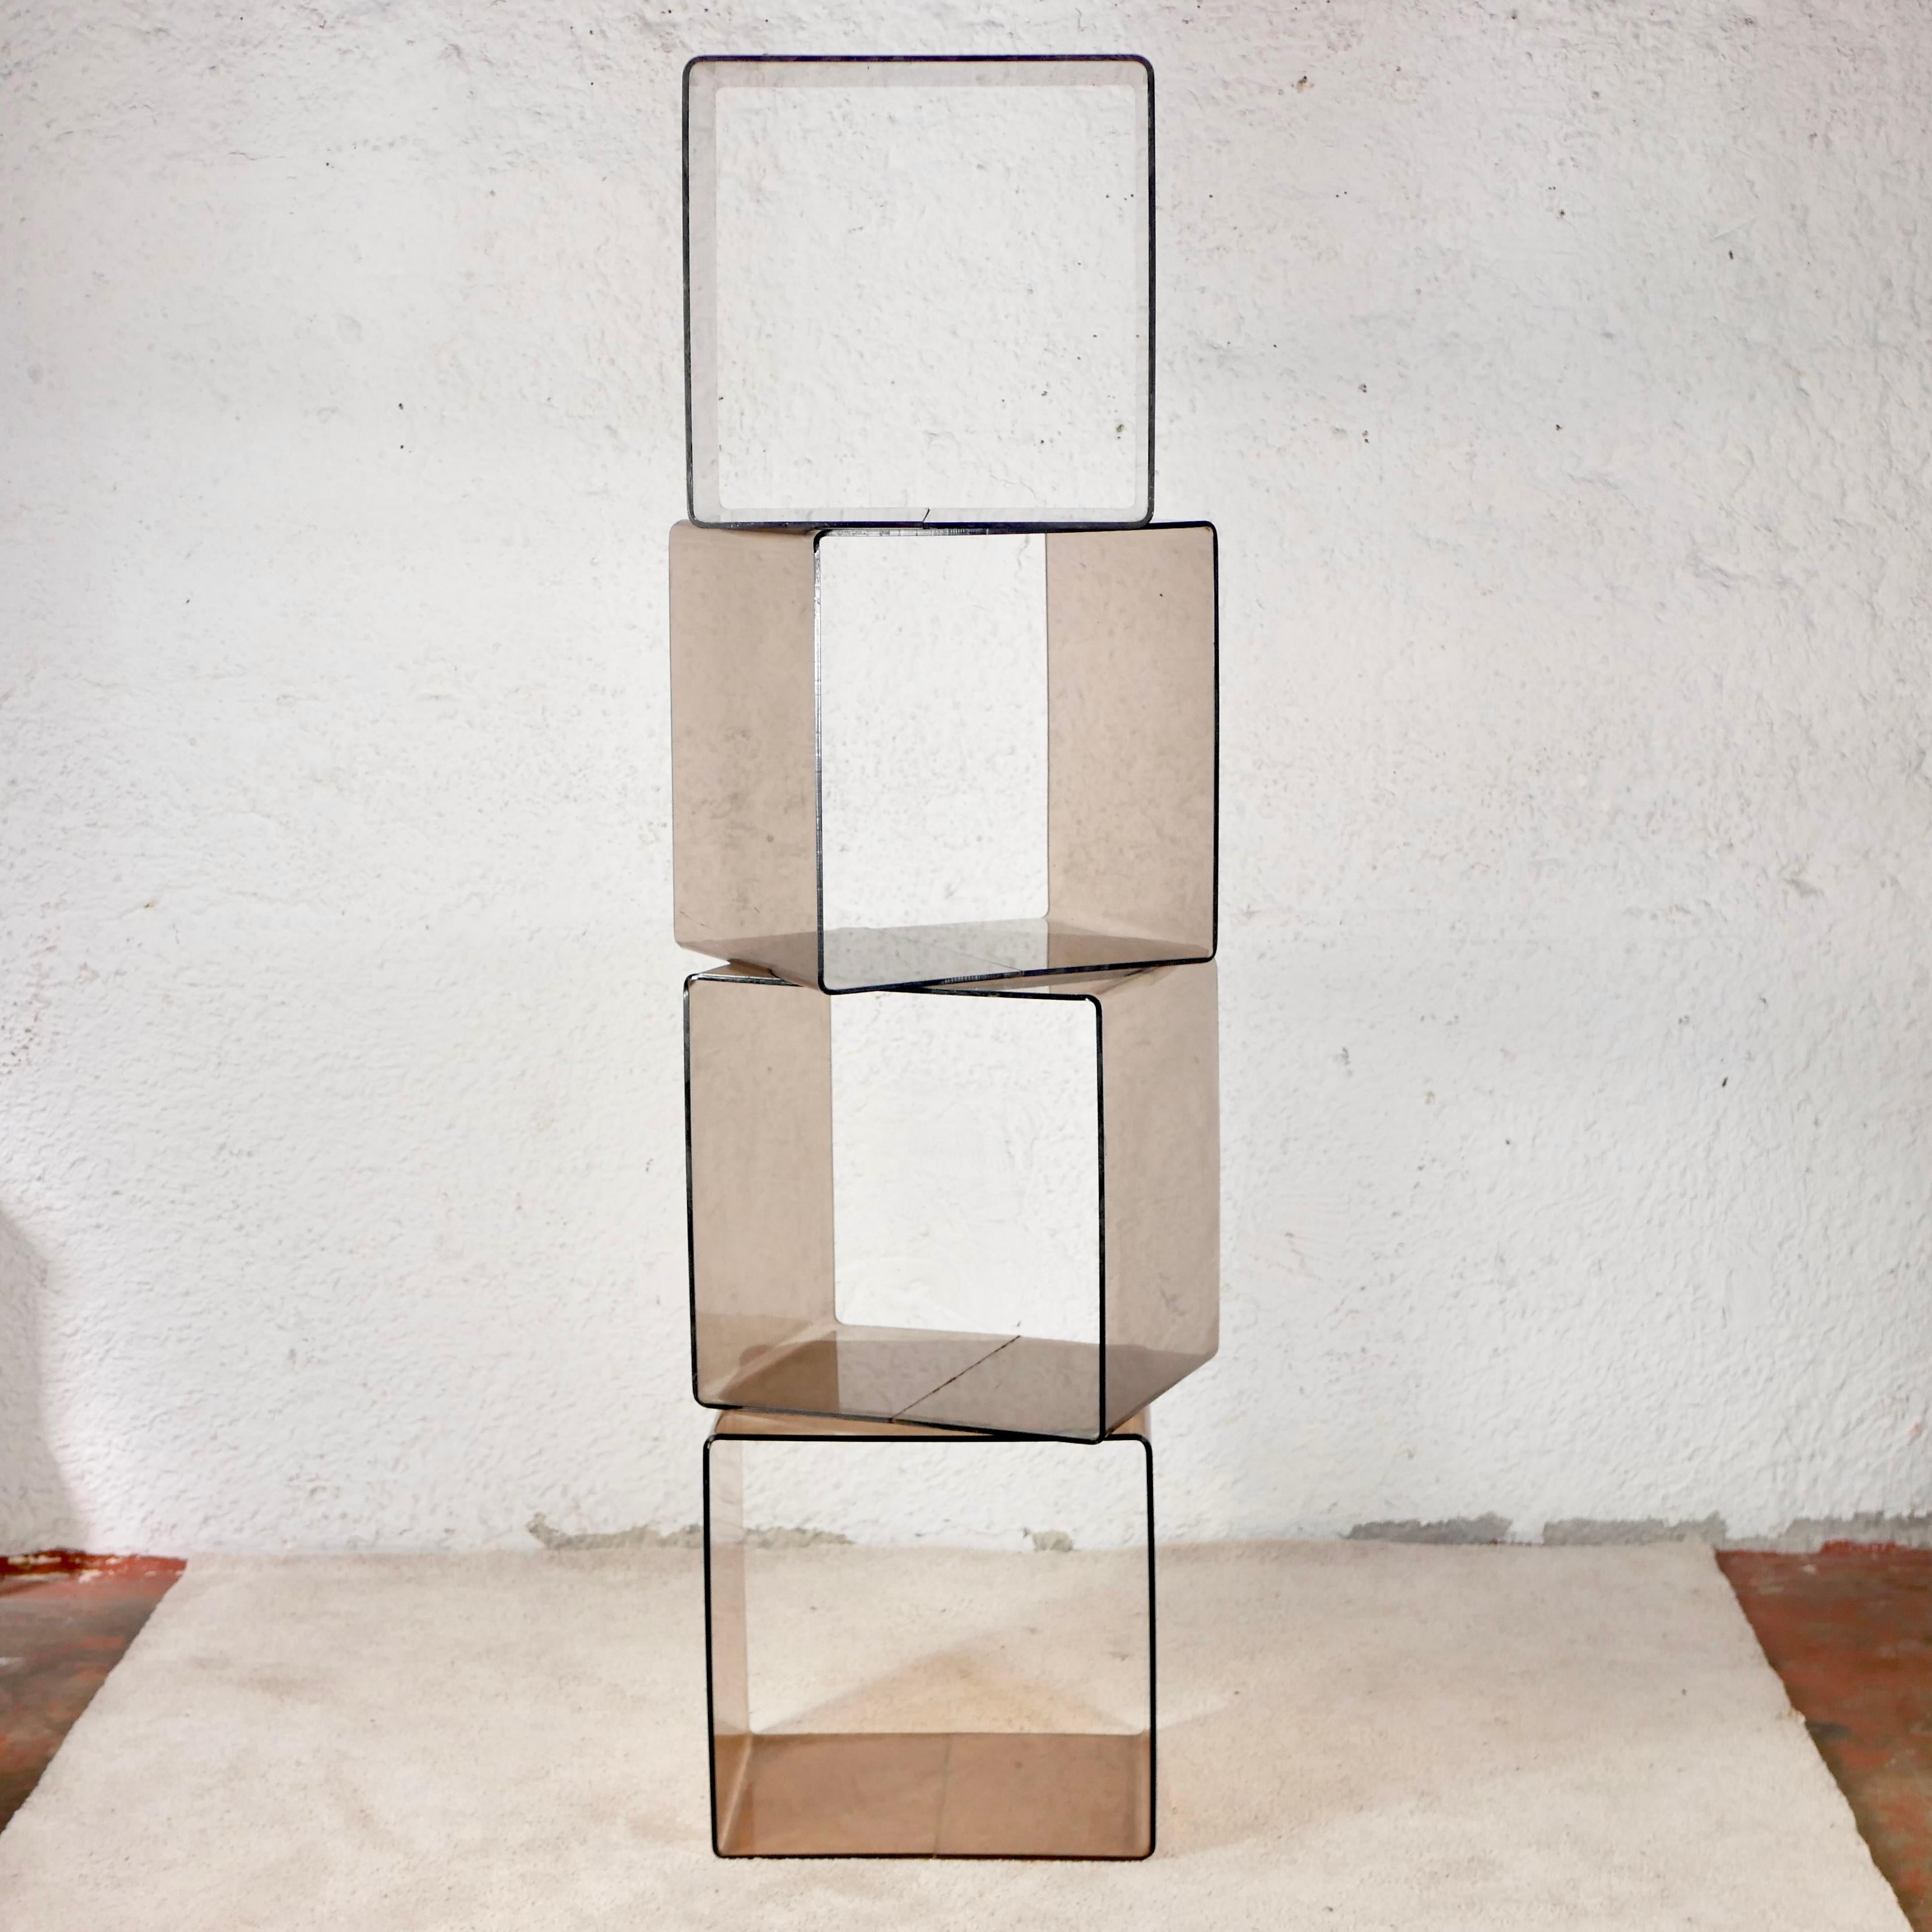 Ensemble de 4 cubes en plexiglas conçus par Michel Dumas pour Roche Bobois dans les années 1970 en France.
Ils sont très pratiques car ils peuvent être installés n'importe où pour ranger vos vêtements, plantes, livres etc. et peuvent être complétés